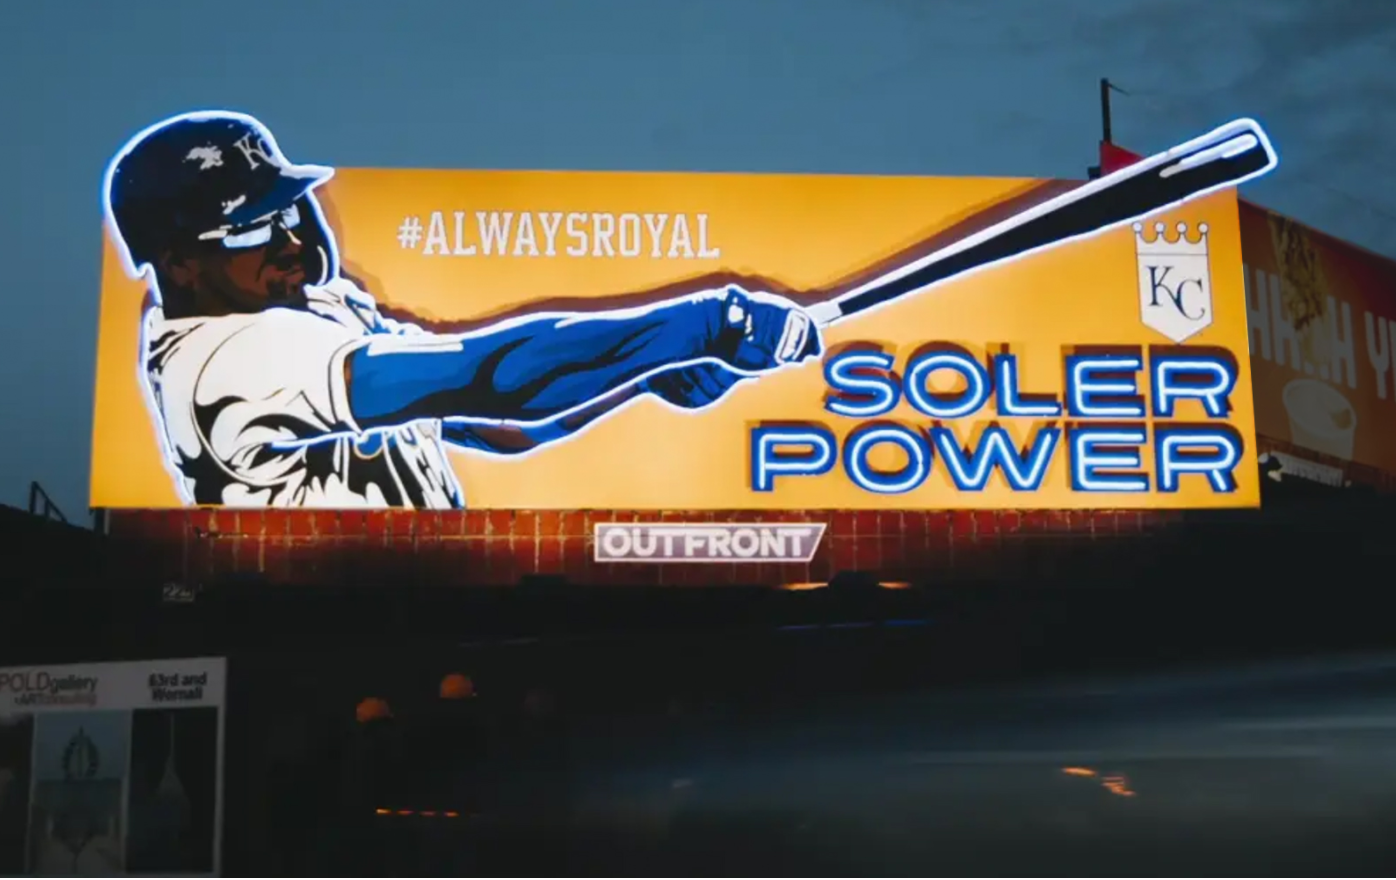 royals soler power billboard